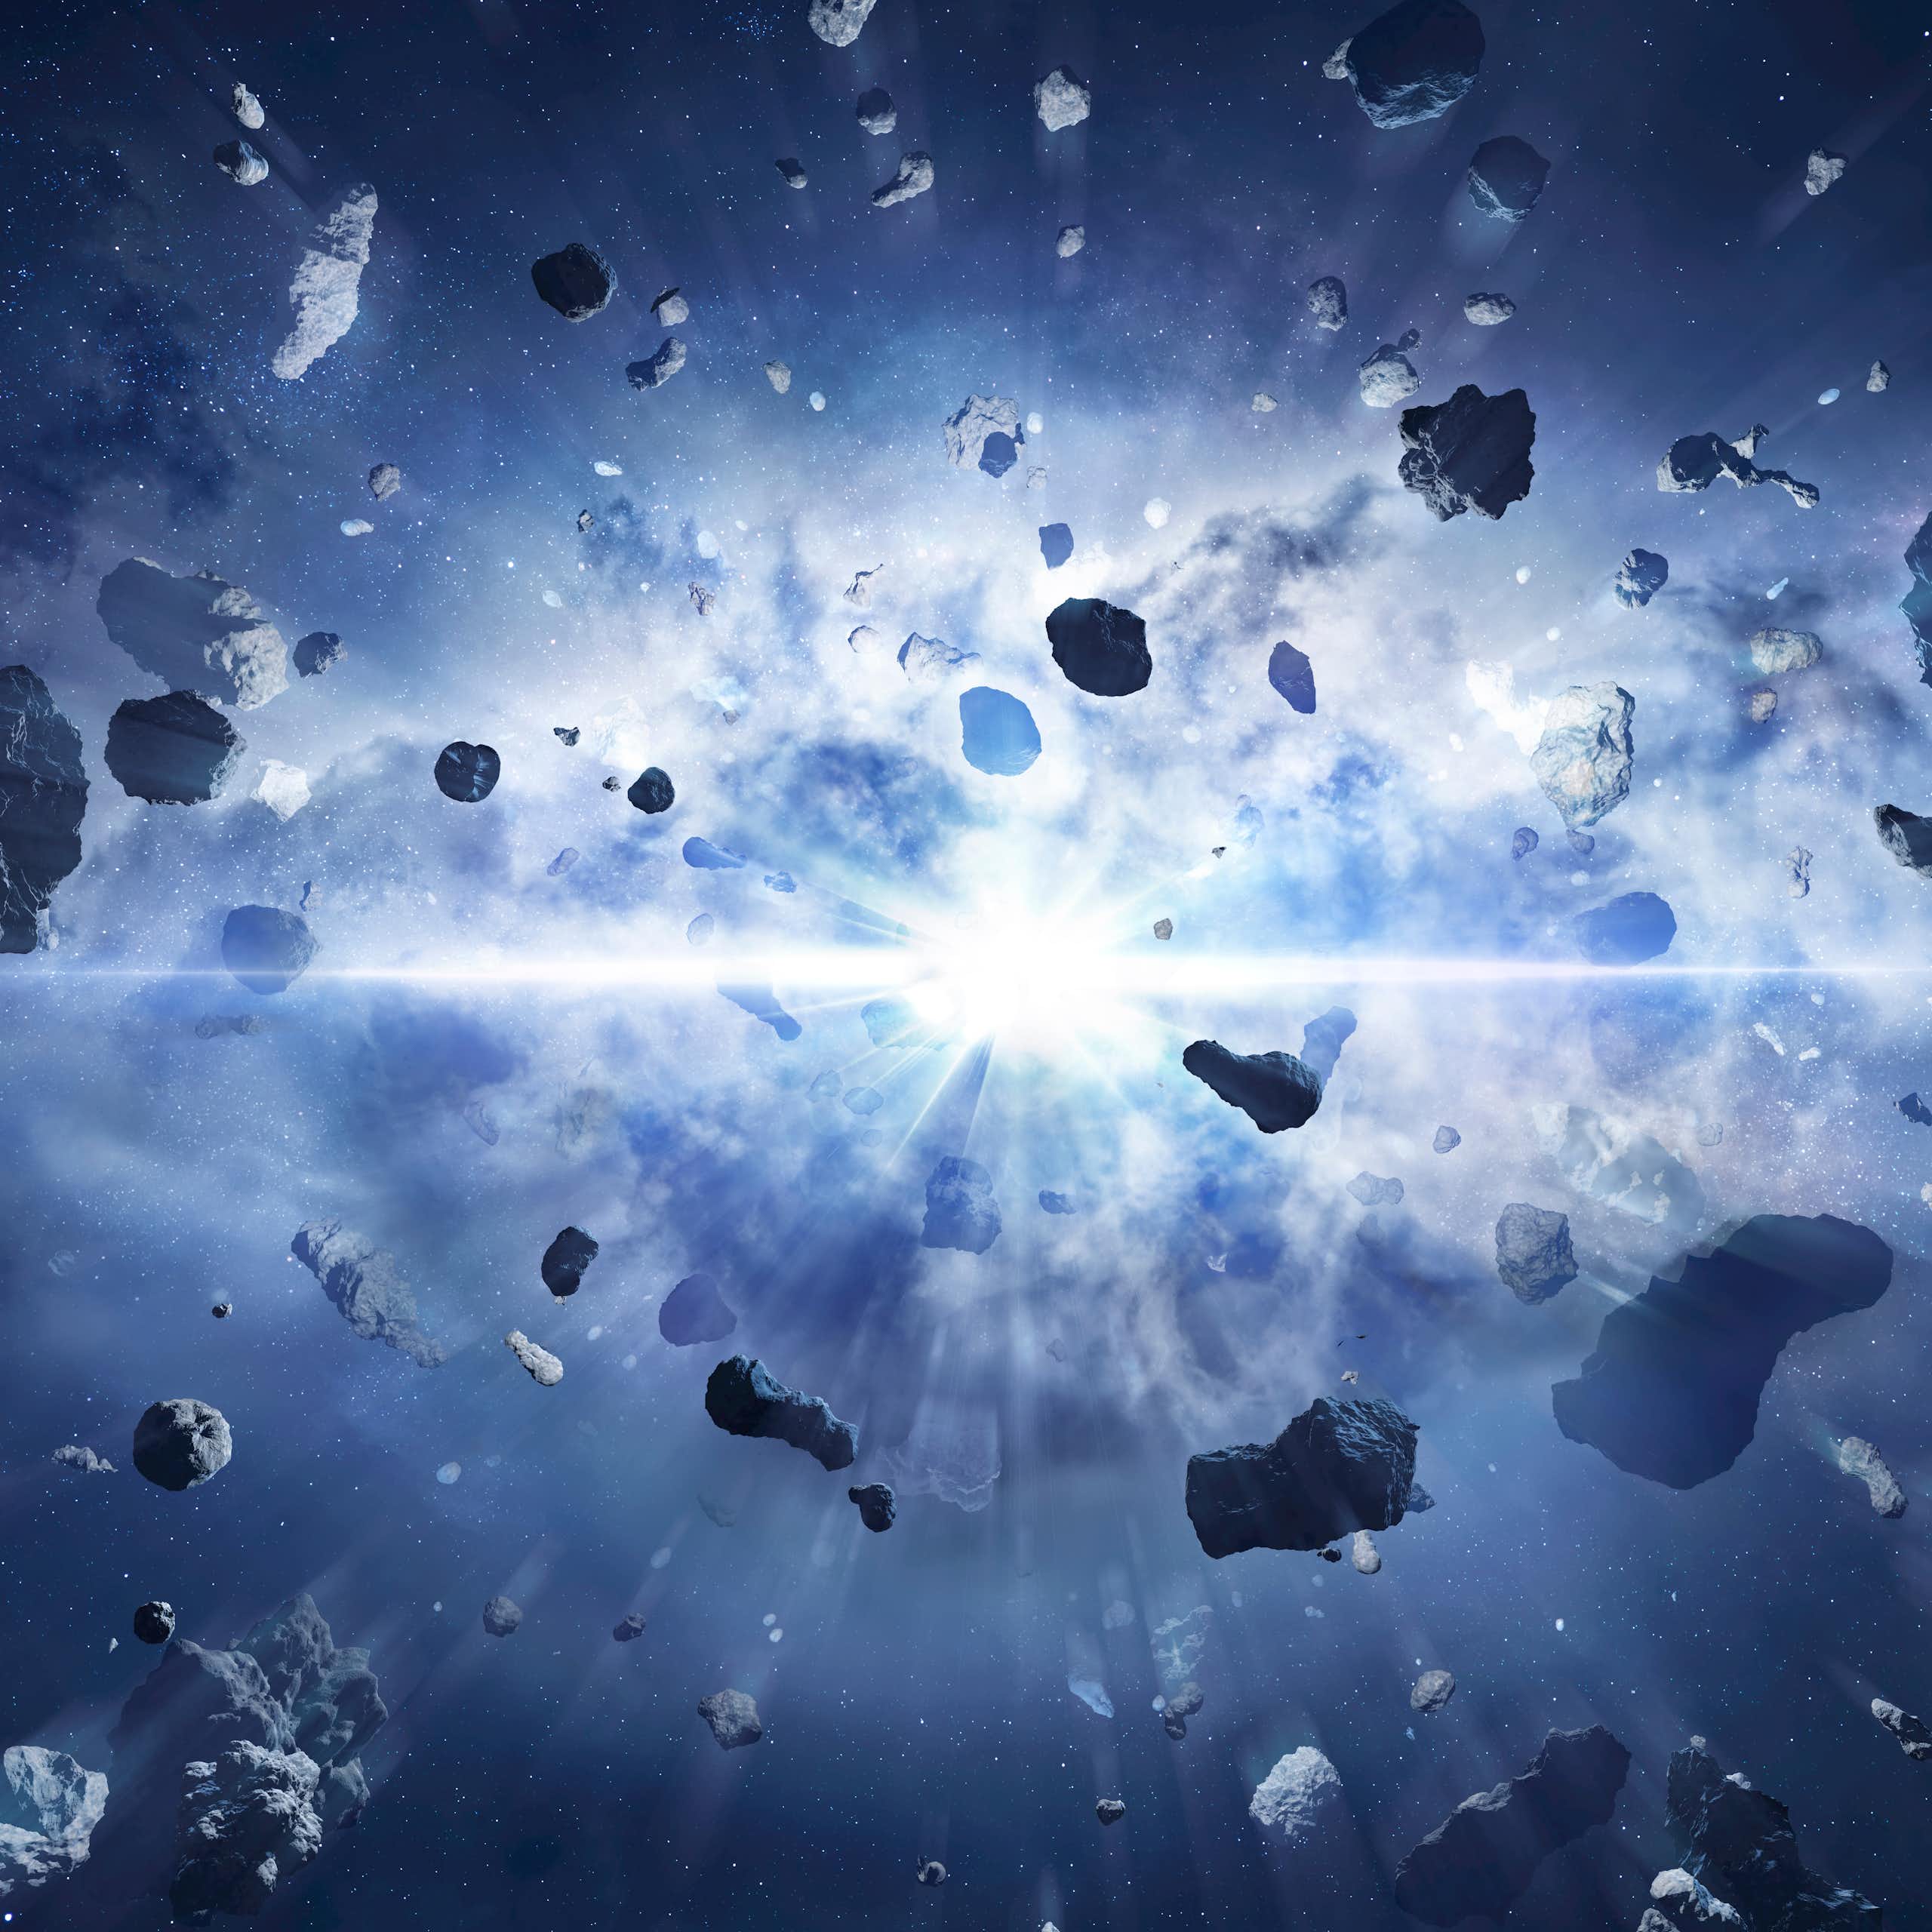 ¿Qué había antes del Big Bang?